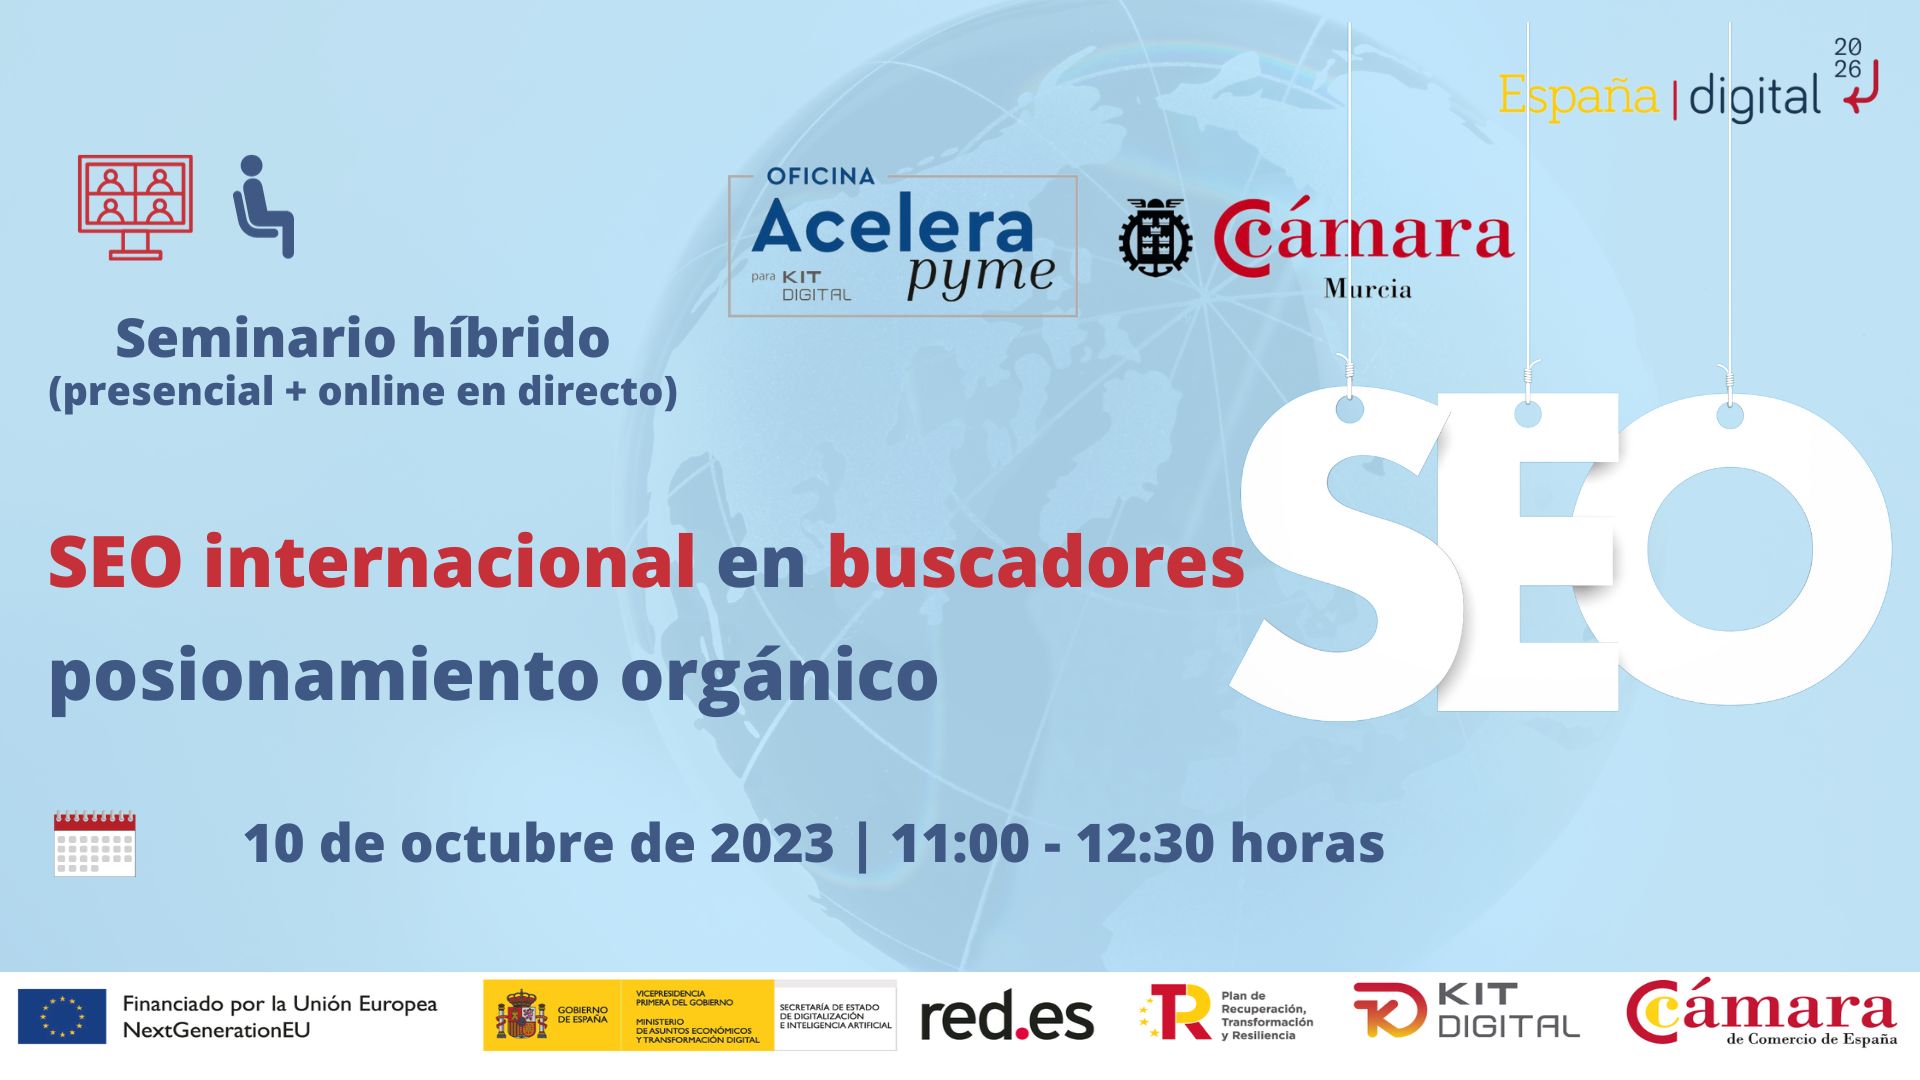 Webinar | SEO internacional en buscadores | Cámara de Comercio de Murcia | Oficina Acelera Pyme